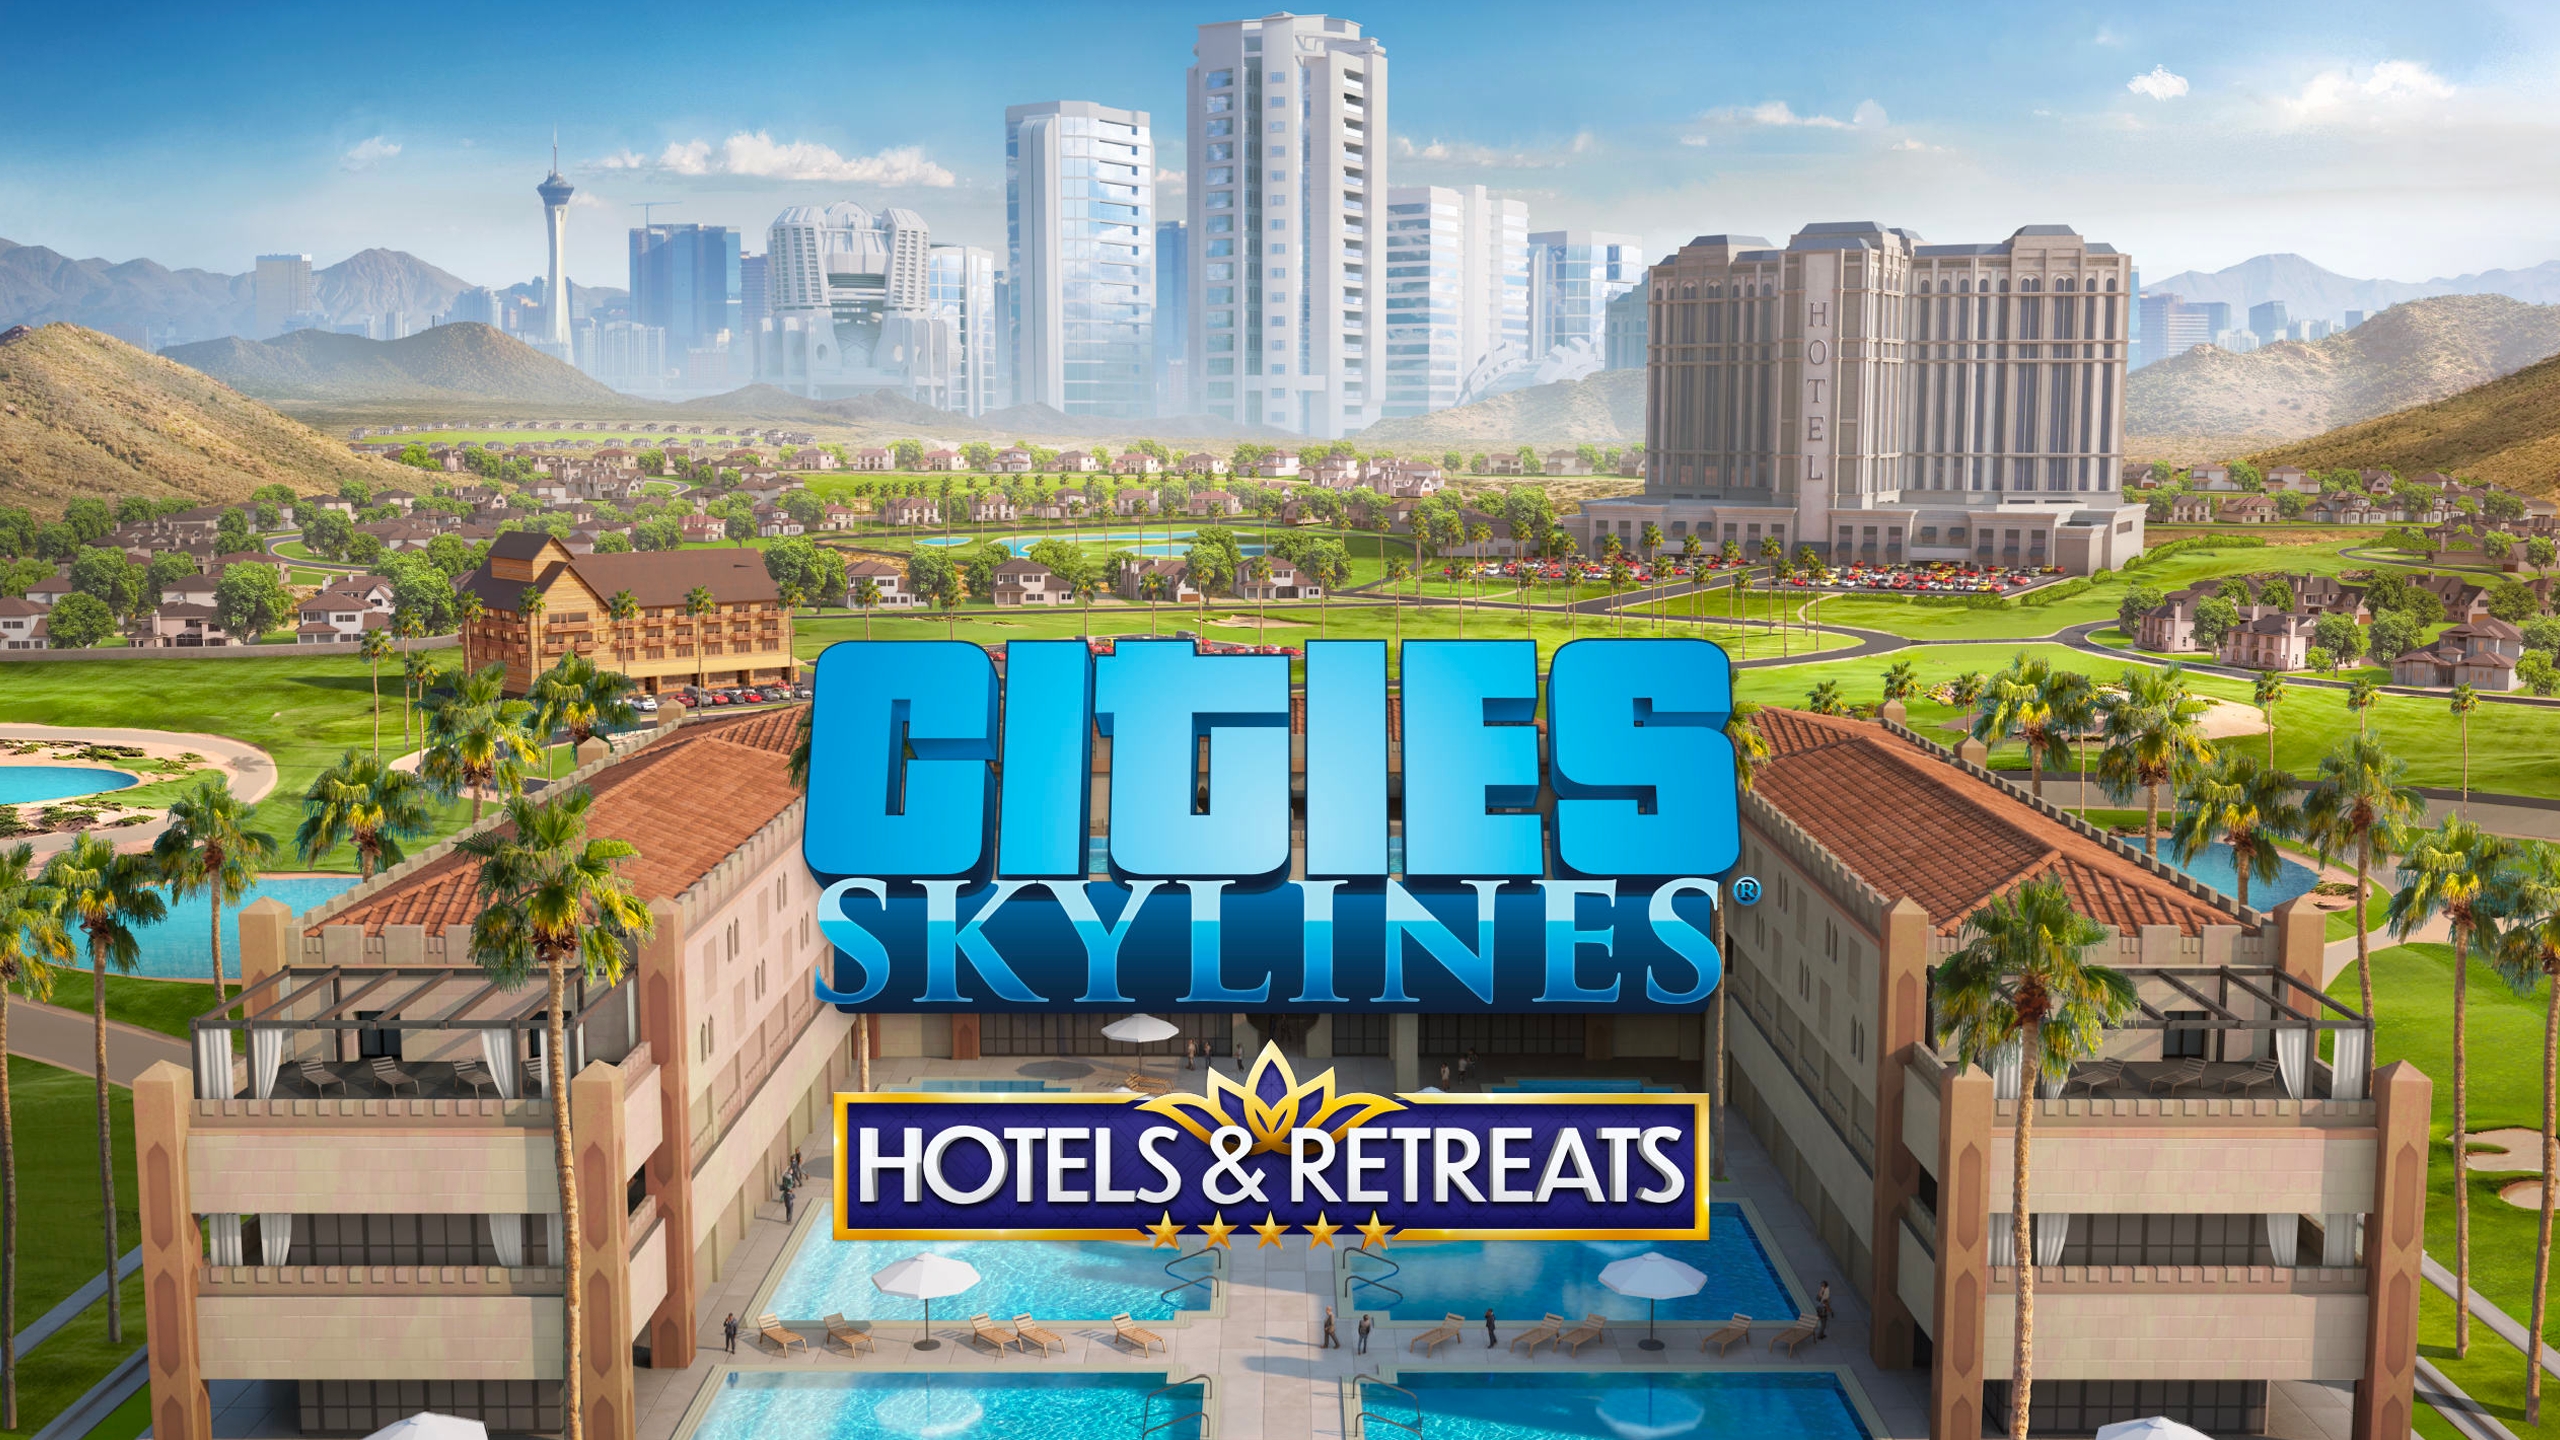 Cities Skyline é o primeiro game gratuito da Epic Games neste fim de ano